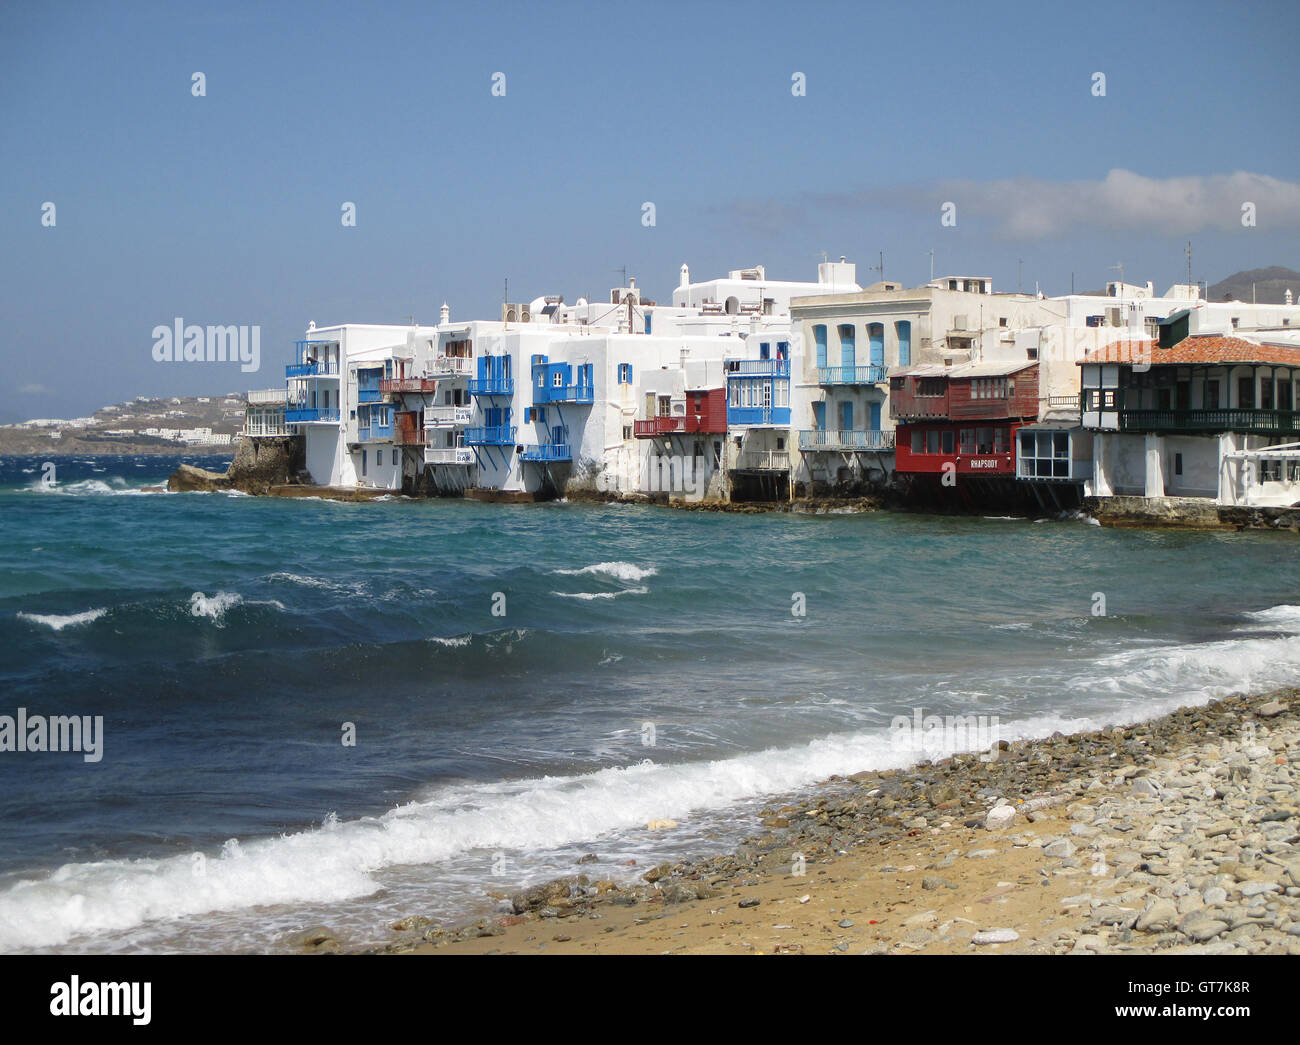 Le célèbre ou Venetia Mikri Petite Venise sur l'île de Mykonos, Grèce Banque D'Images